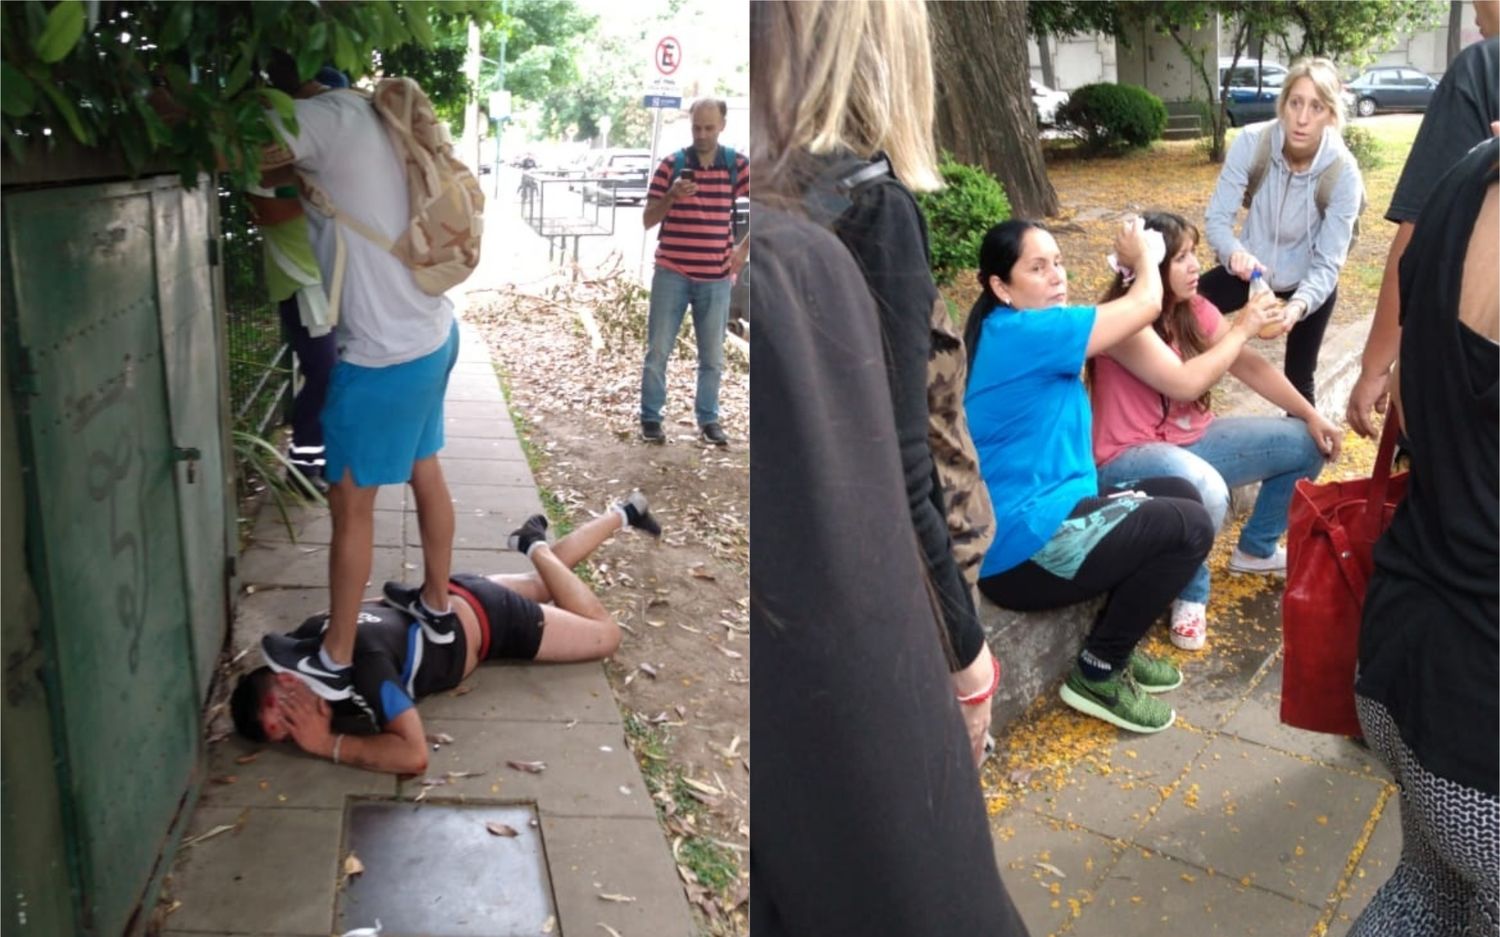 Vecinos enfurecidos redujeron a un ladrón que golpeó a una mujer para robarle en San Isidro